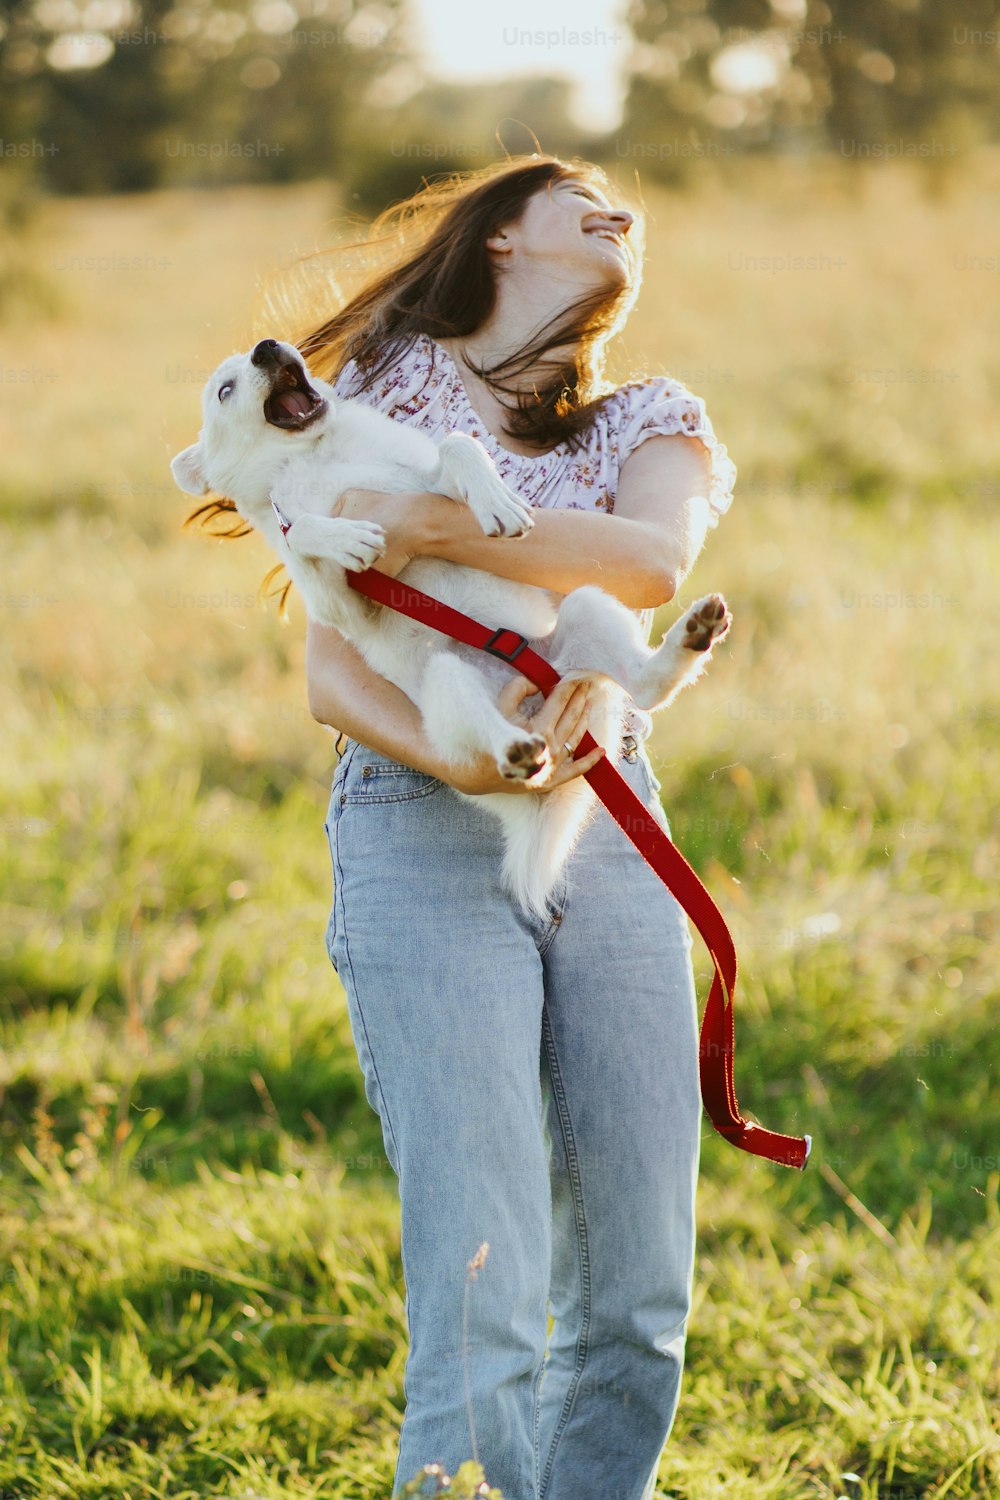 Ragazza che tiene in mano un cucciolo soffice adorabile giocoso, momento esilarante. Giocare con la pecorina. Giovane donna felice che tiene un cucciolo bianco divertente nella calda luce del tramonto nel prato estivo.